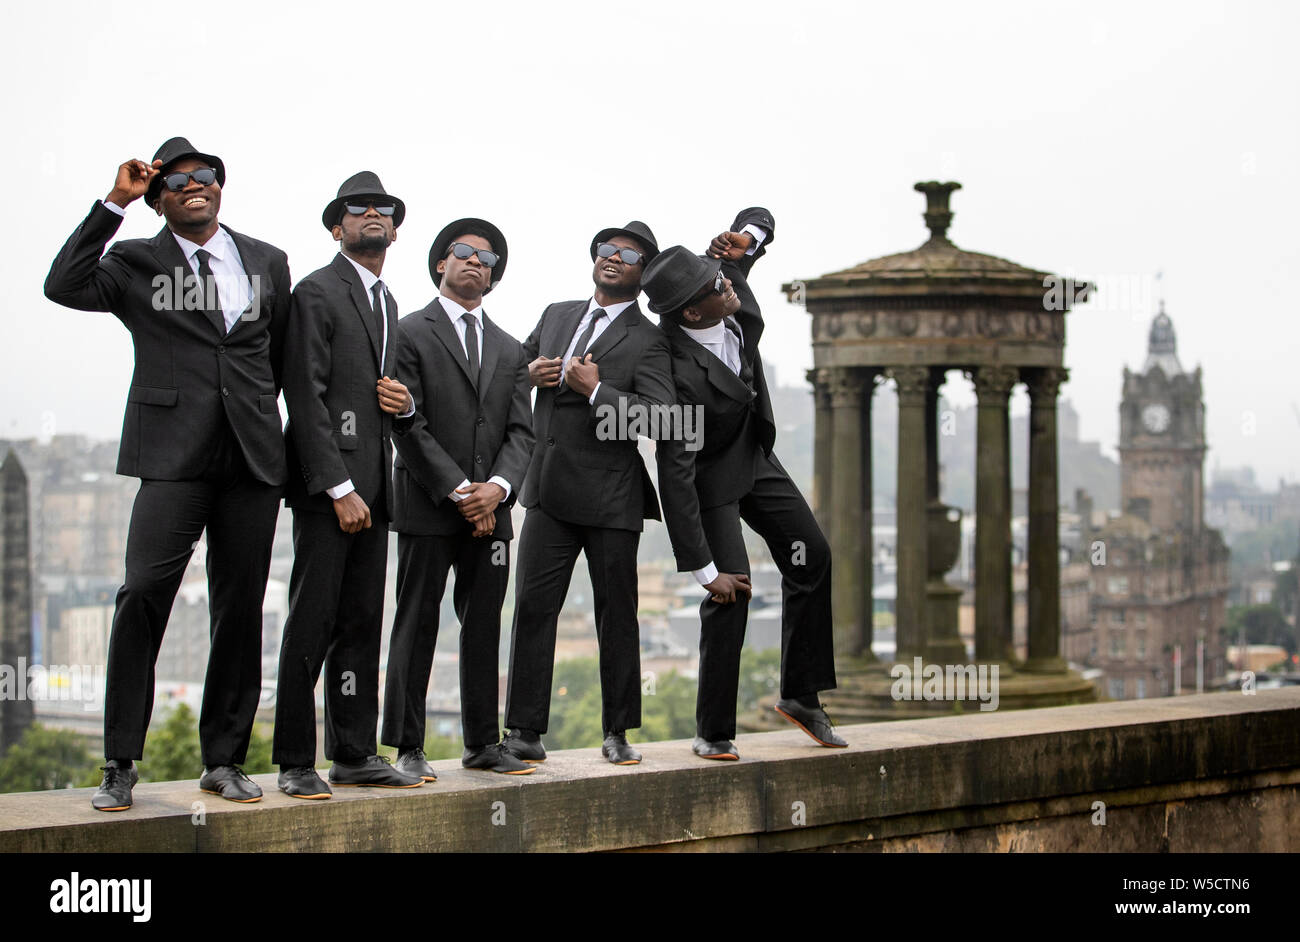 Les Blues Brothers Noir, cinq acrobates kenyans, effectuer une partie de leur spectacle Edinburgh Festival Fringe d'Édimbourg sur Calton Hill au cours de leur toute première visite à l'Écosse. Banque D'Images